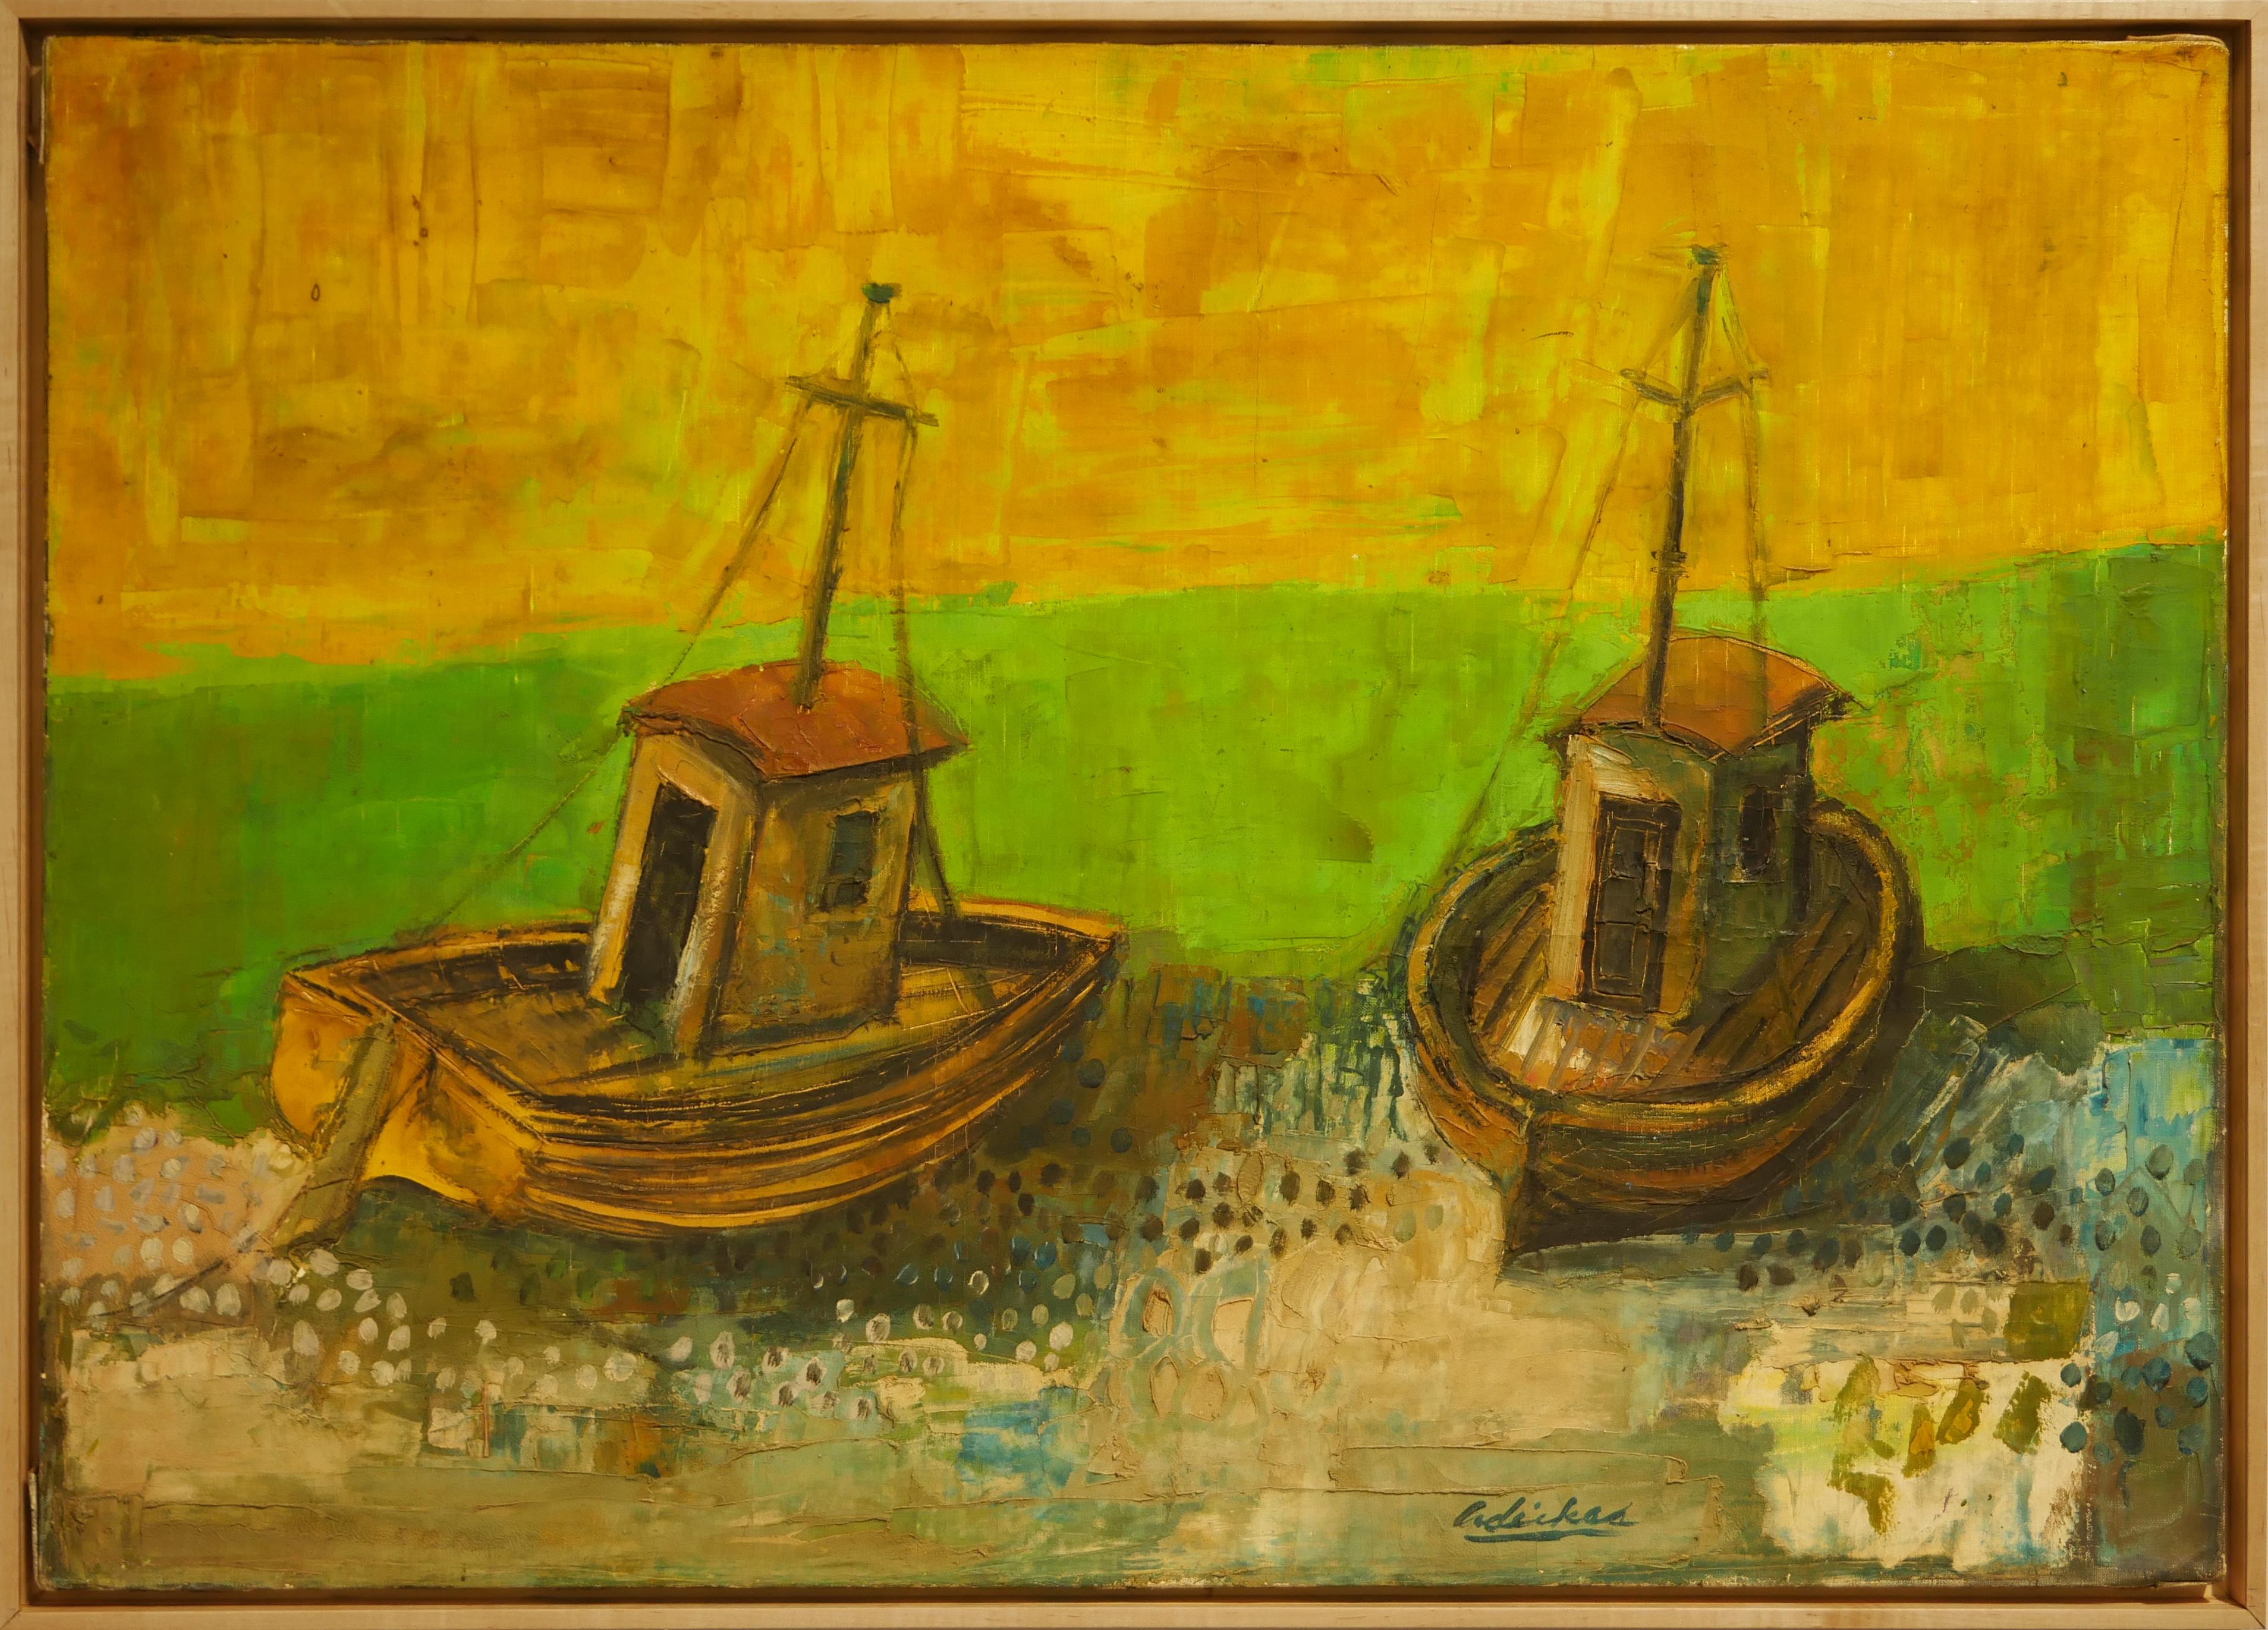 Landscape Painting David Adickes - "Deux bateaux sur la mer verte" - Peinture de paysage abstrait géométrique moderne